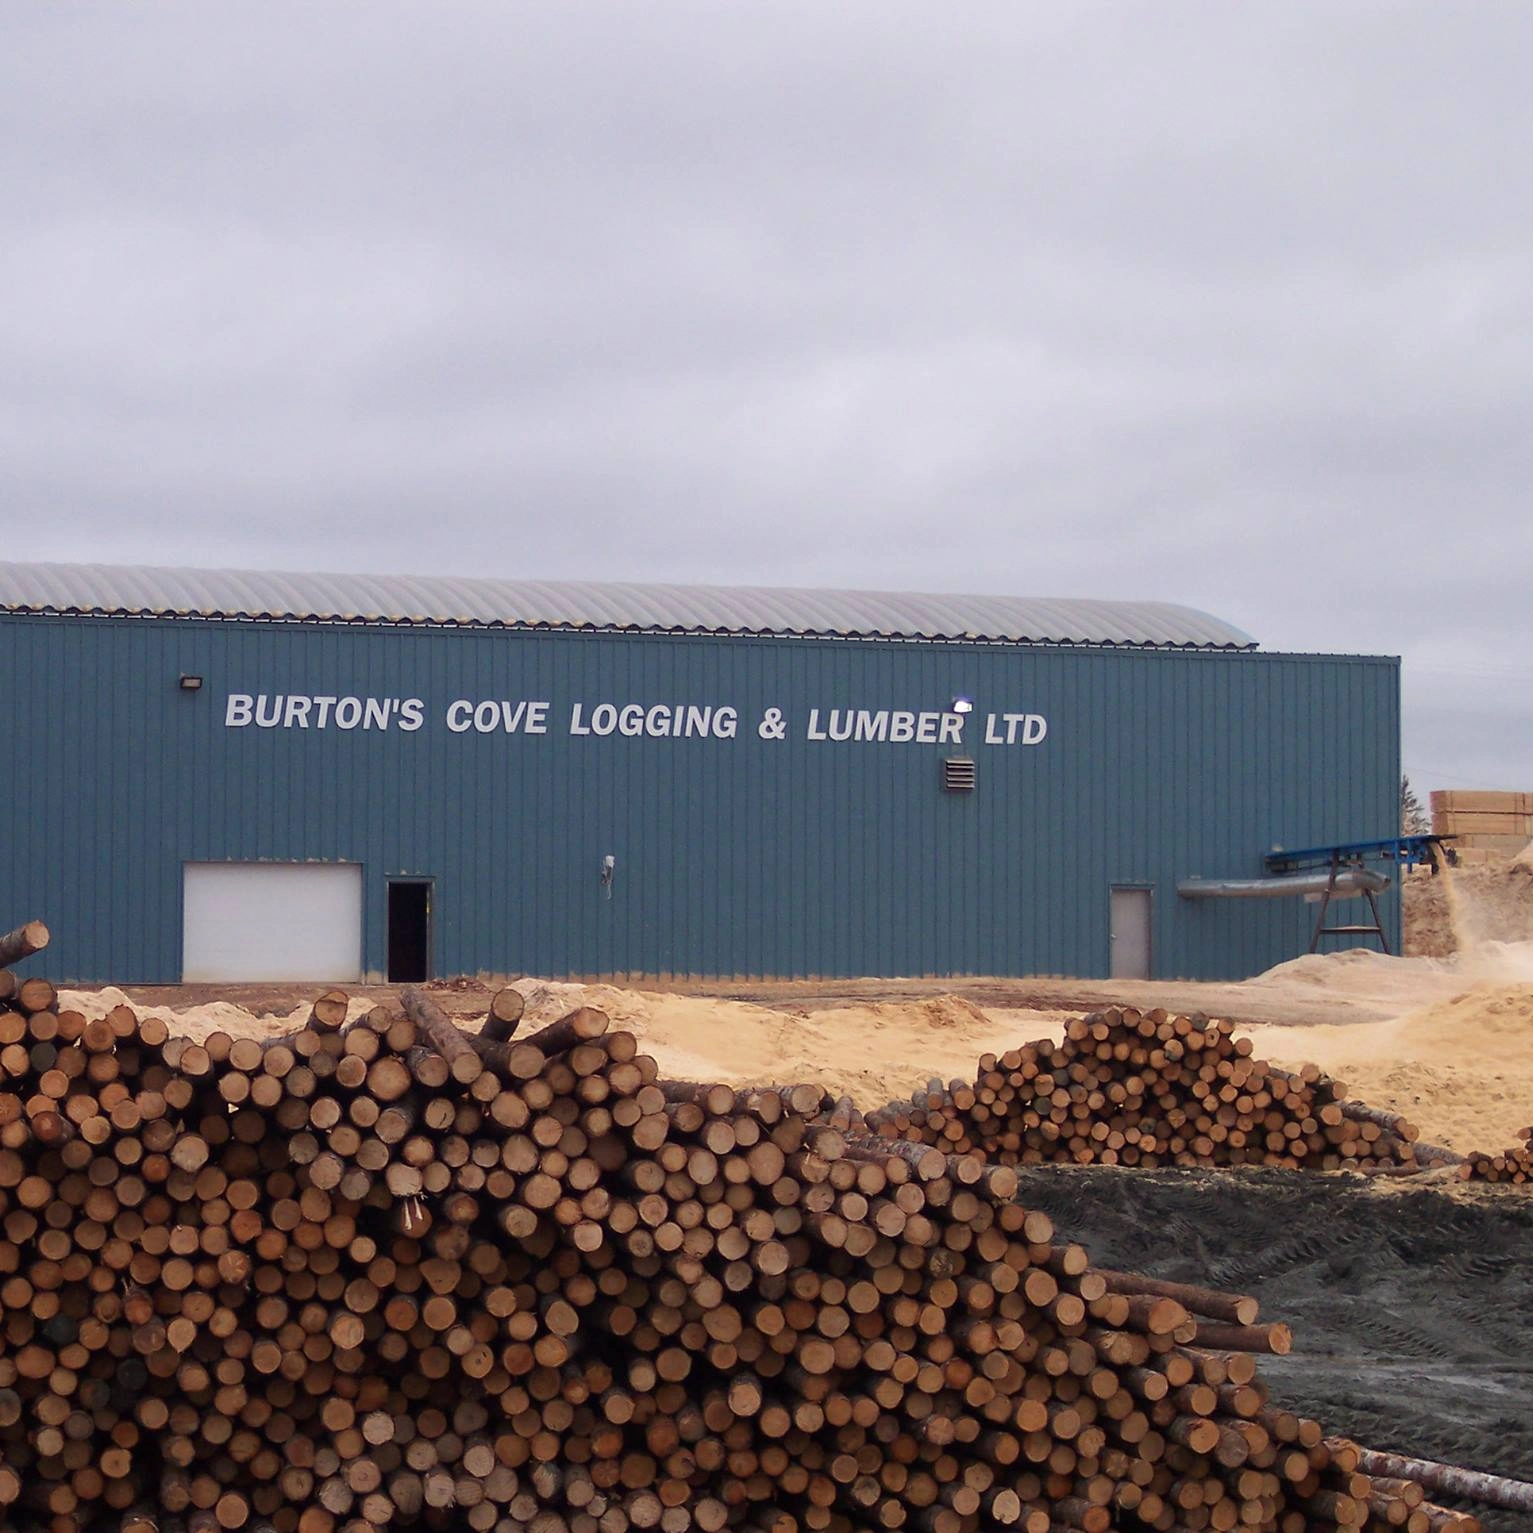 Chez notre client de Burton's Cove en Terre Neuve et Labrador, Effecto a répondu aux besoins de gestion des approvisionnements